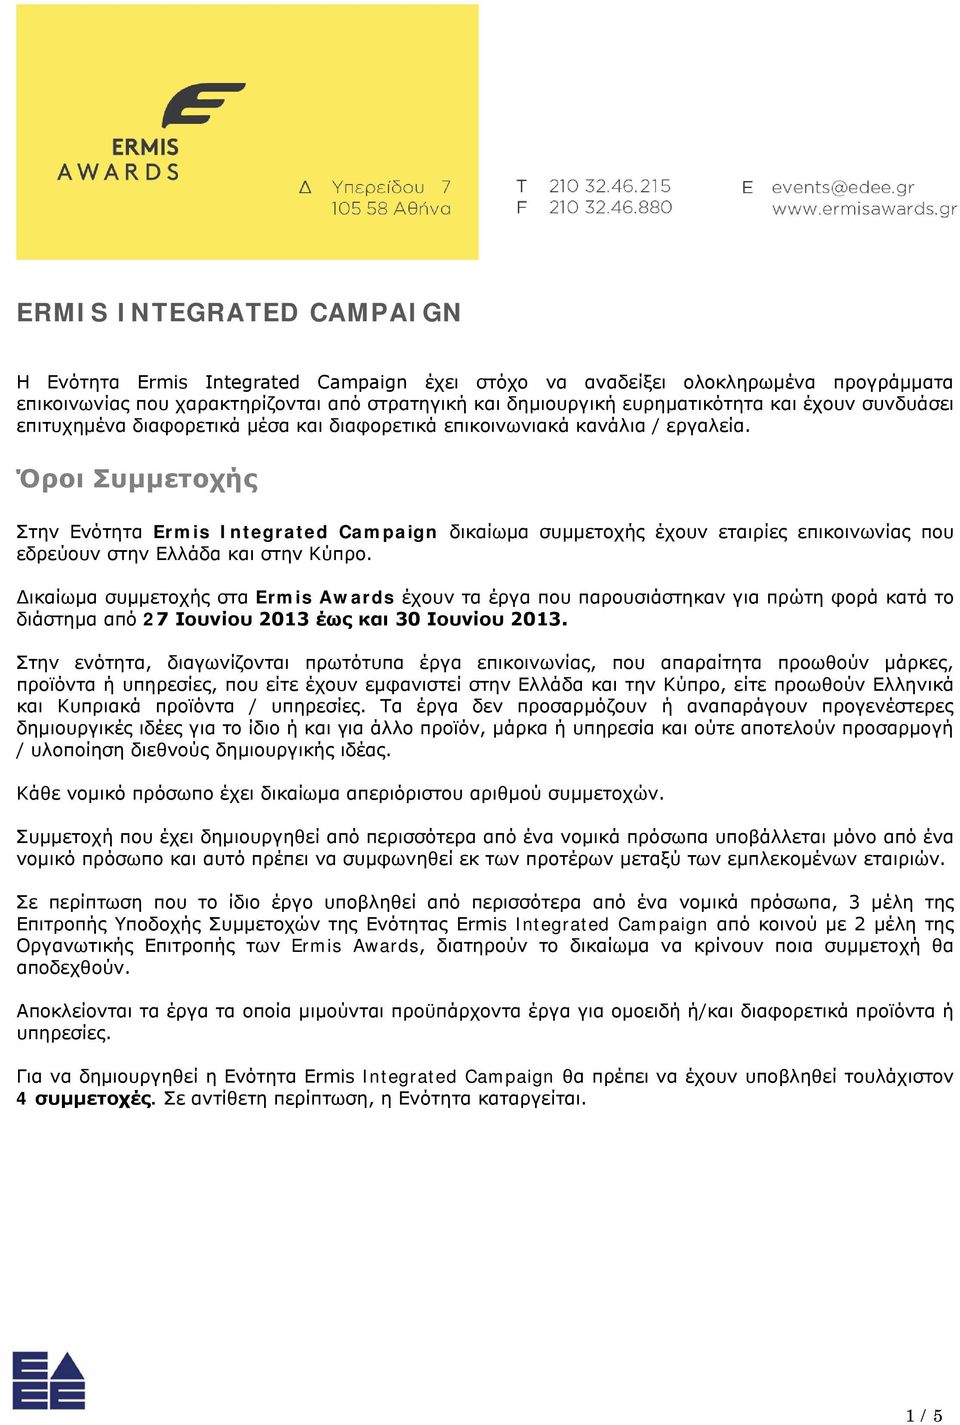 Όροι Συμμετοχής Στην Ενότητα Ermis Integrated Campaign δικαίωμα συμμετοχής έχουν εταιρίες επικοινωνίας που εδρεύουν στην Ελλάδα και στην Κύπρο.